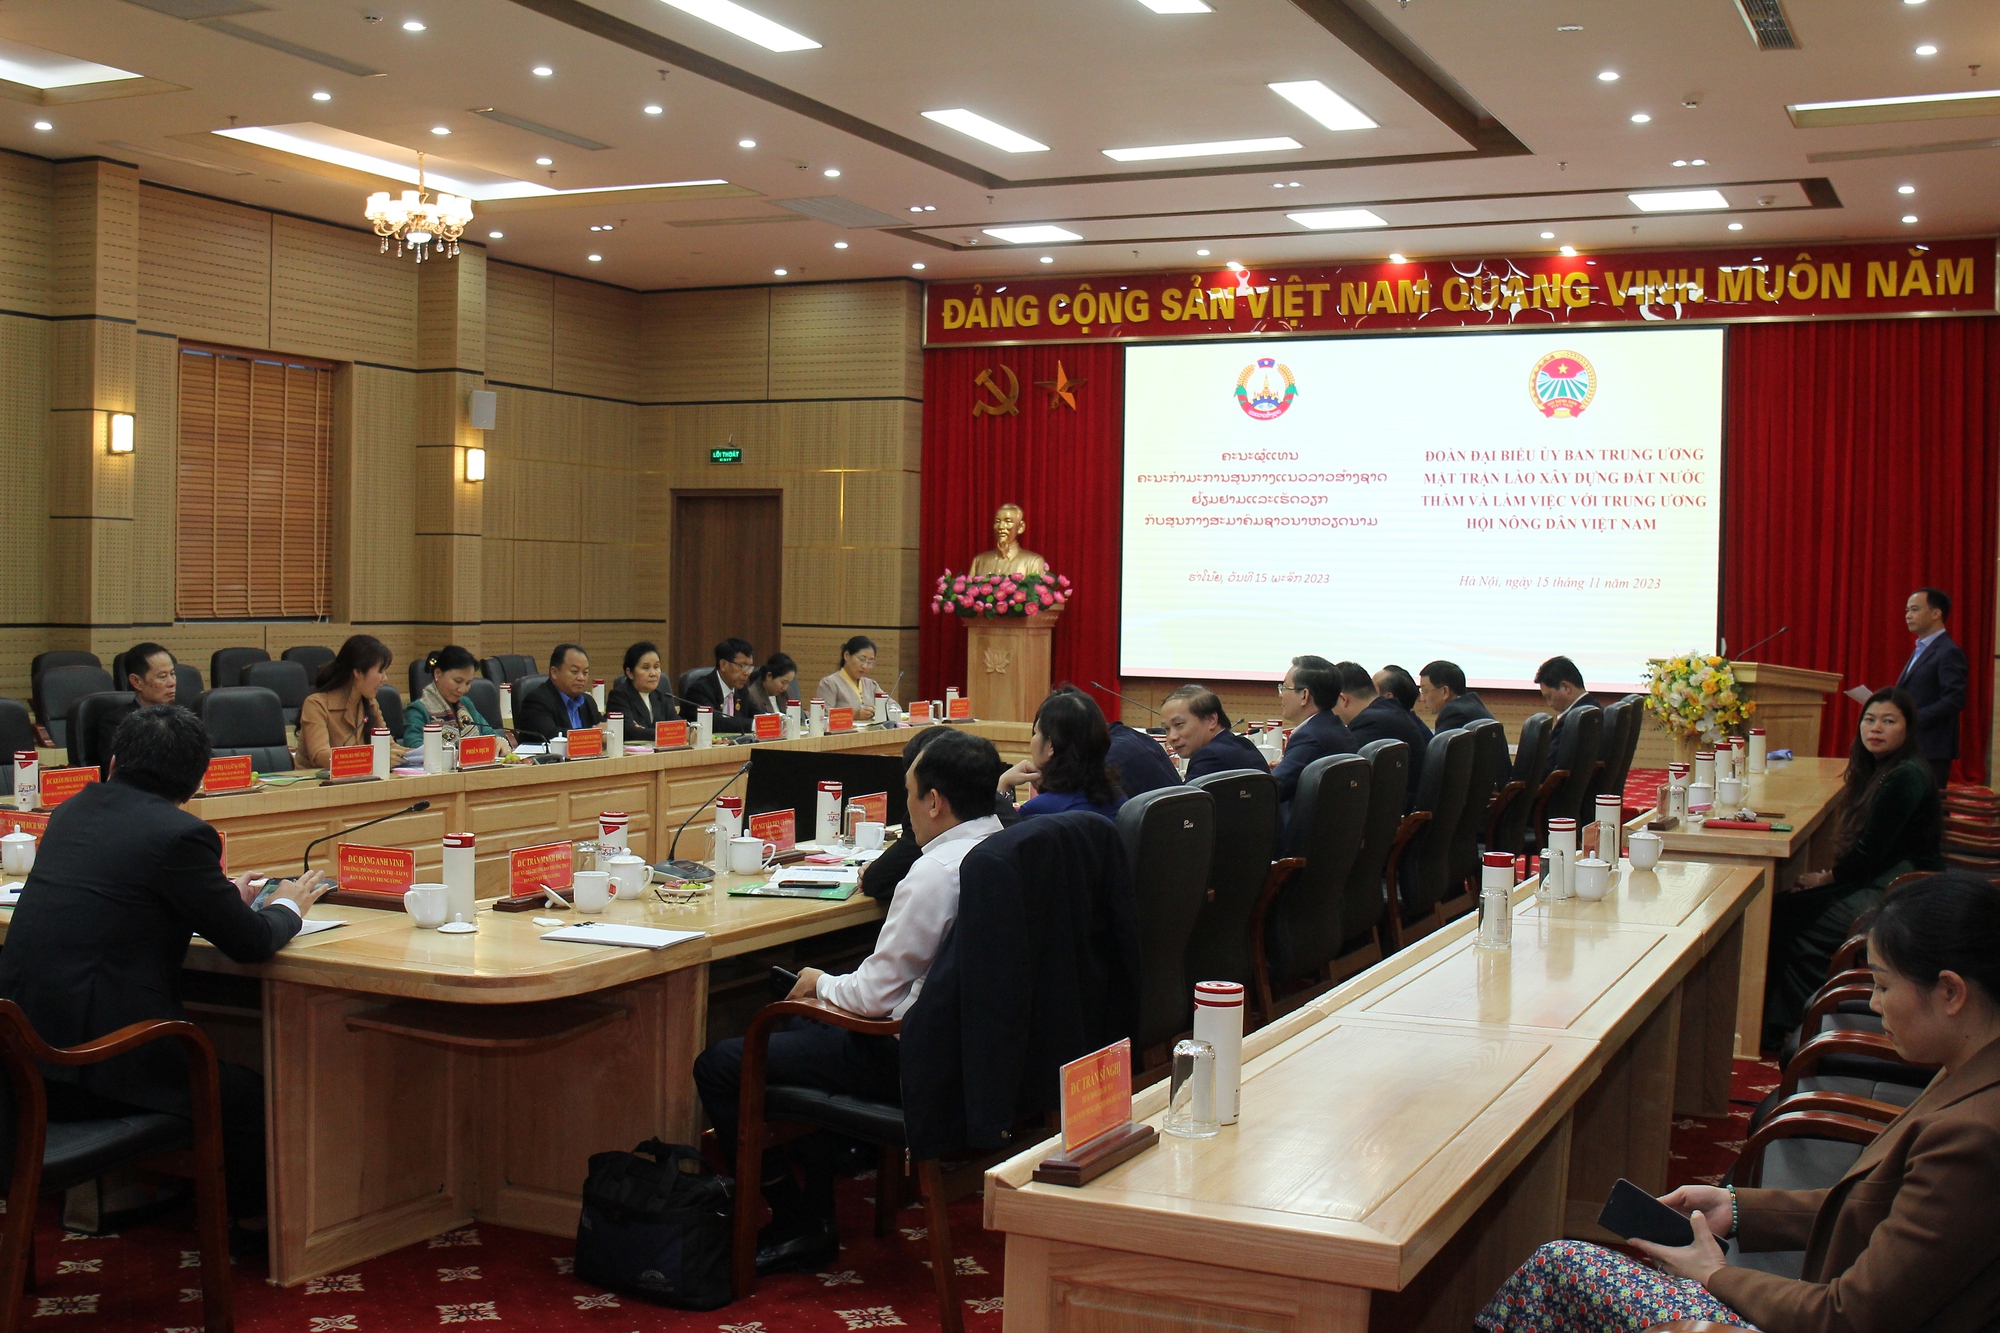 Chủ tịch Hội NDVN Lương Quốc Đoàn tiếp, làm việc với đoàn Ủy ban TƯ Mặt trận Lào xây dựng đất nước - Ảnh 3.